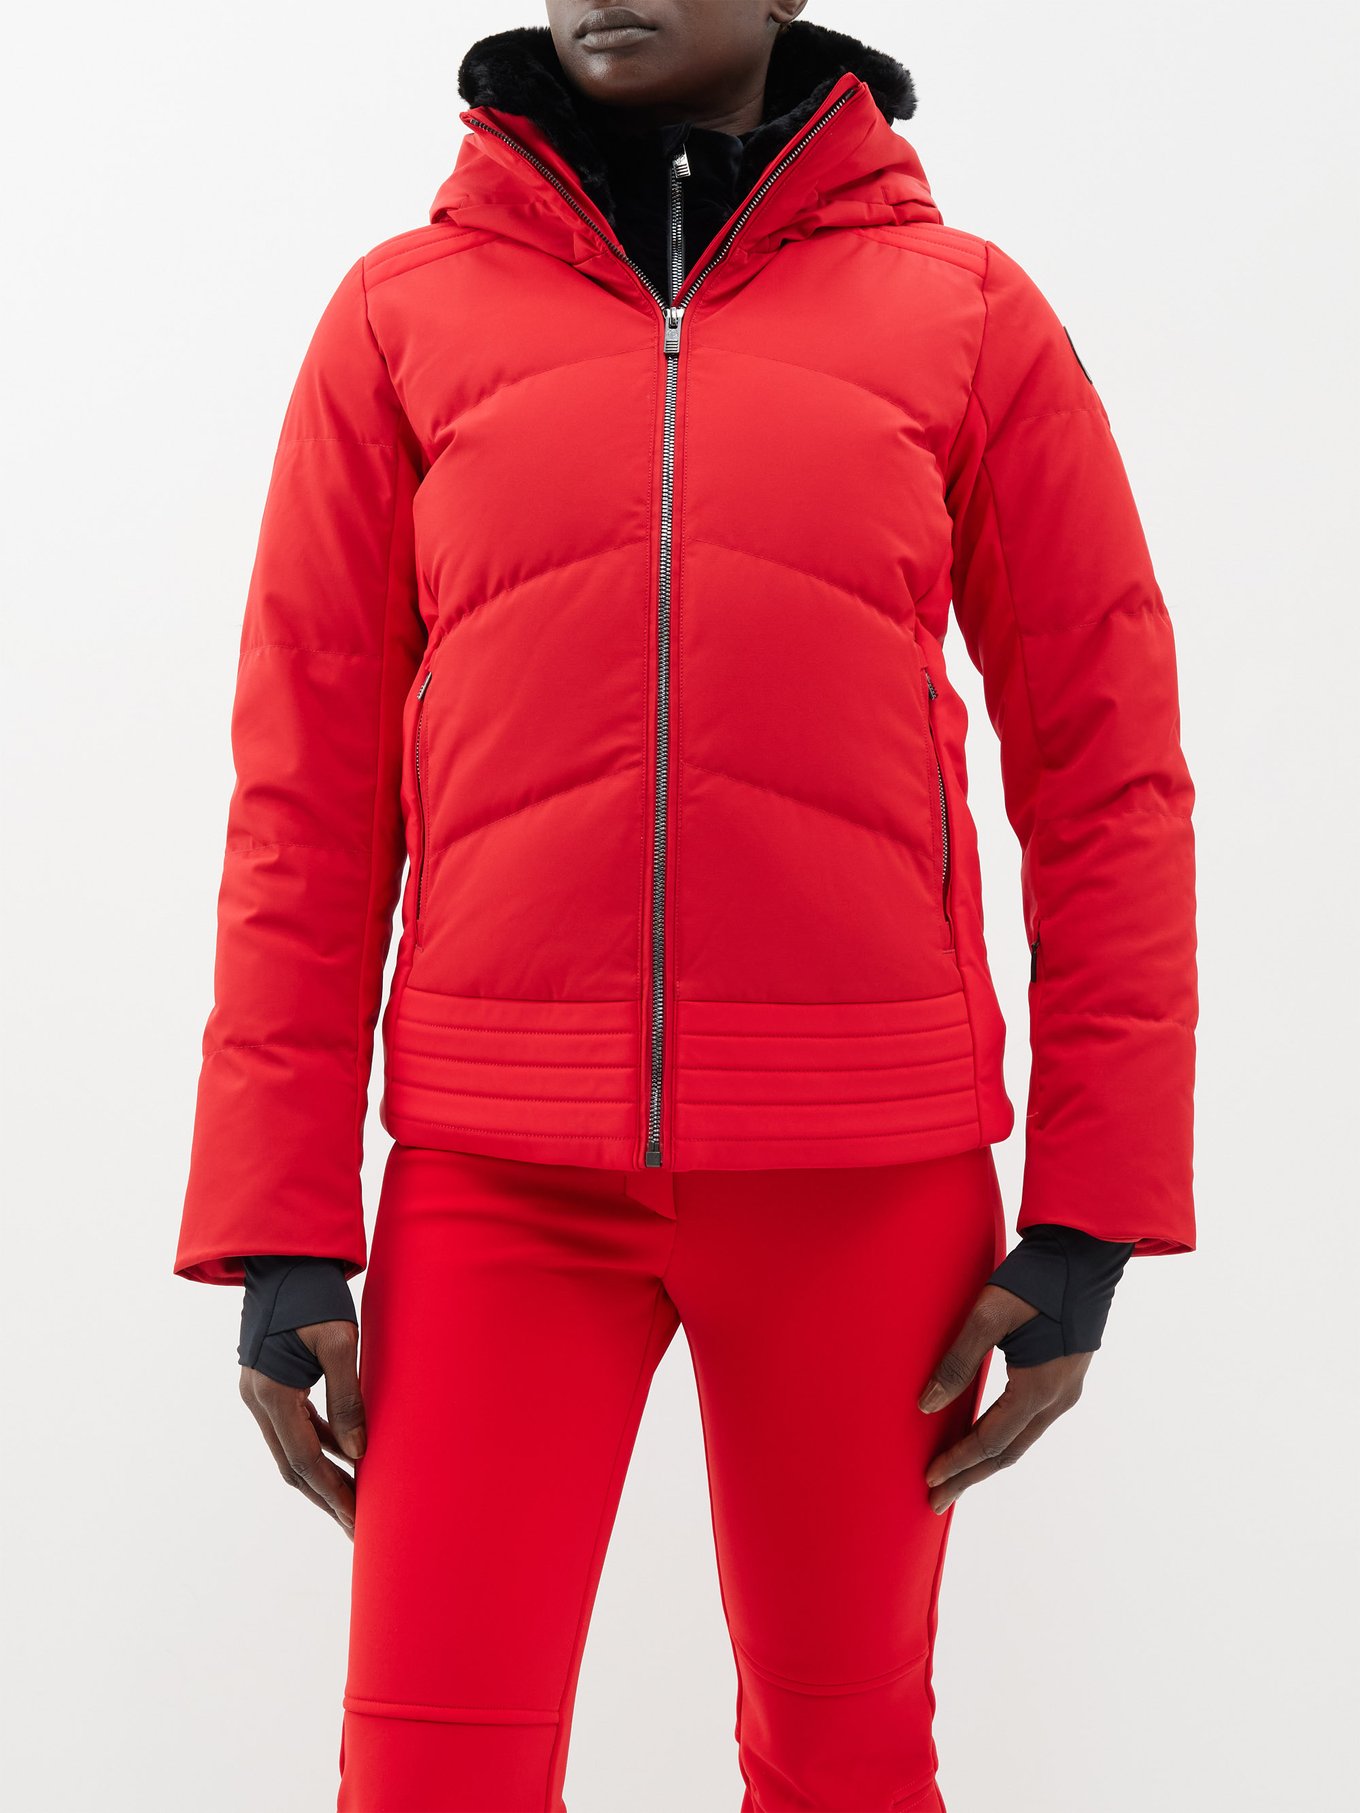 Red Moraine down hooded ski jacket, Goldbergh